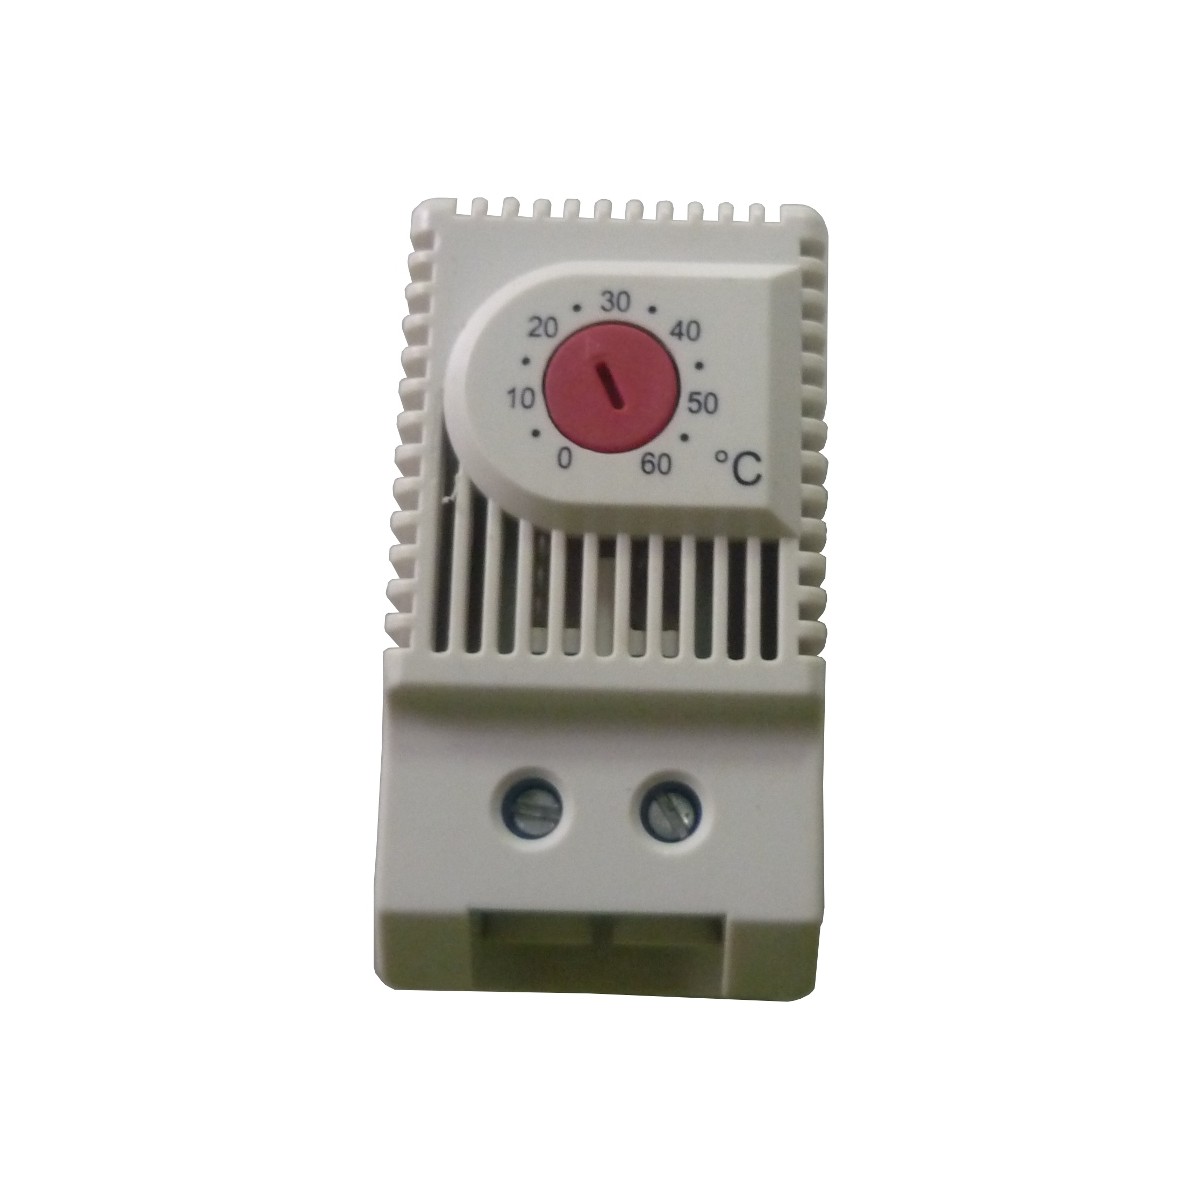 JWT6011R - termostat NC